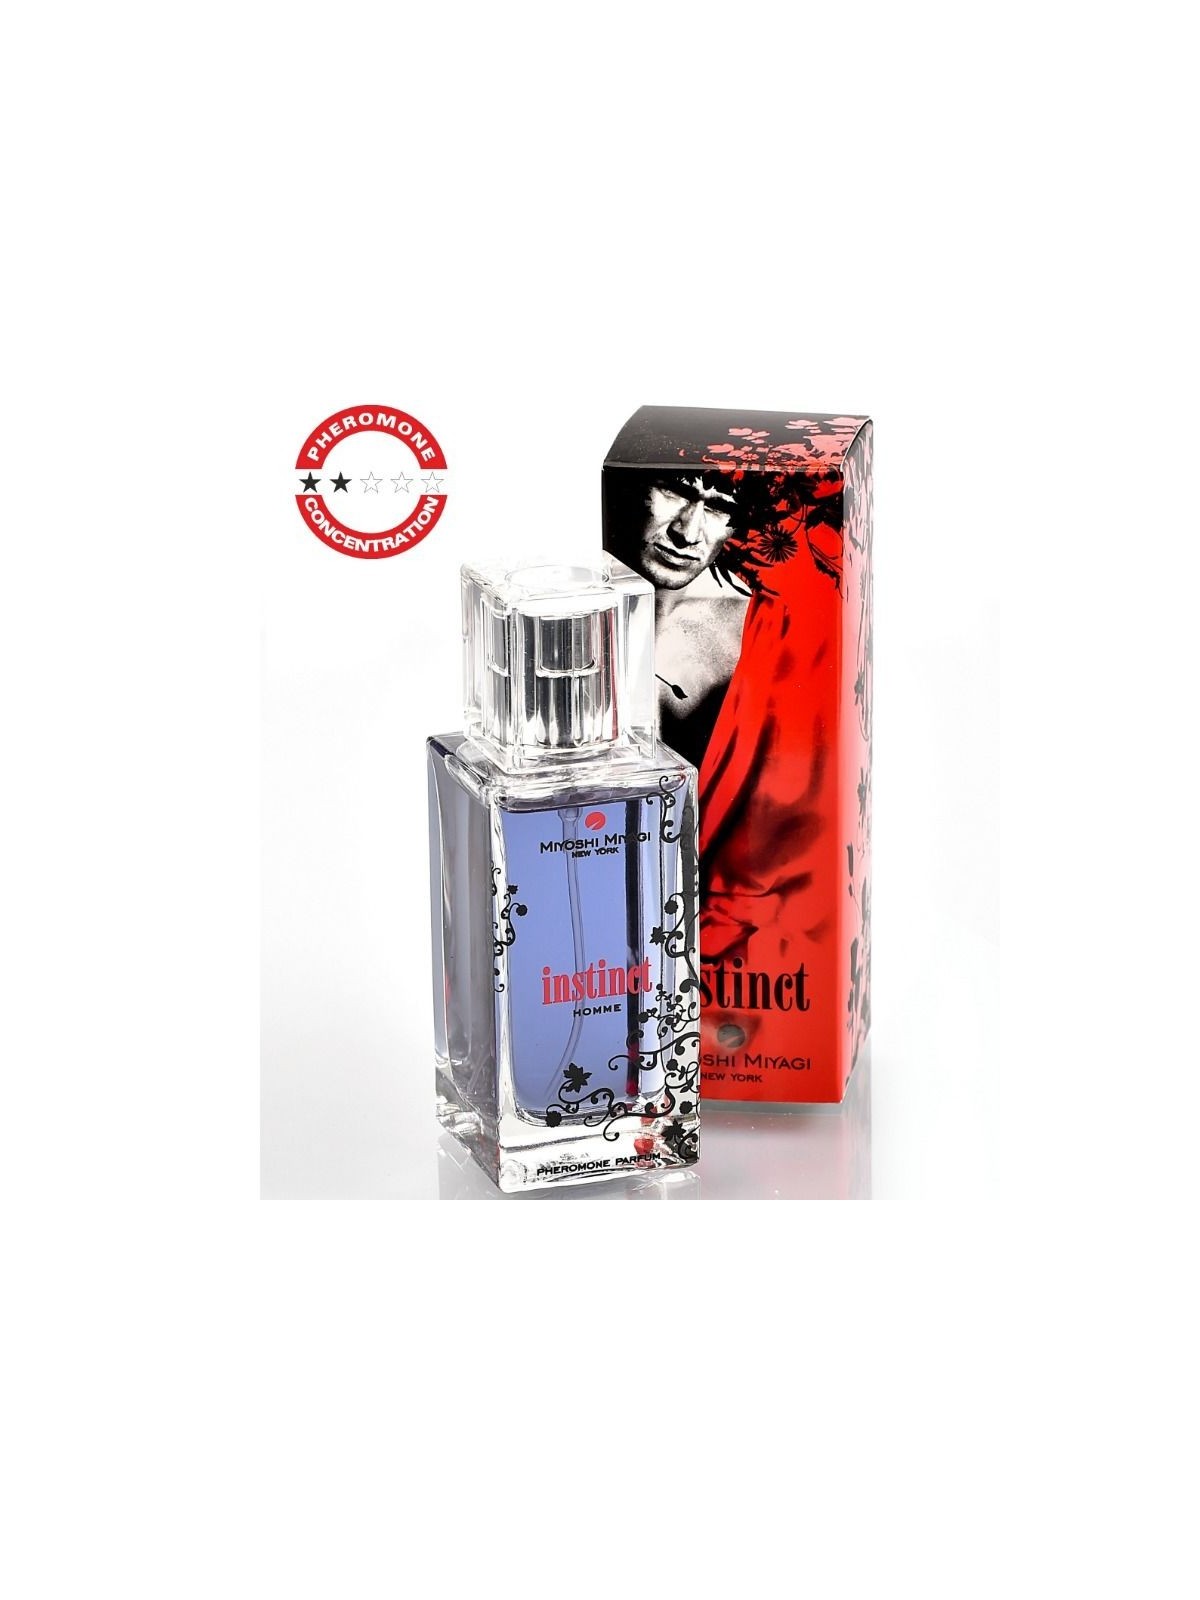 Miyoshi Miyagi New York Instinct Hombre - Comprar Perfume feromona Miyoshi Miyagi - Perfumes con feromonas (1)